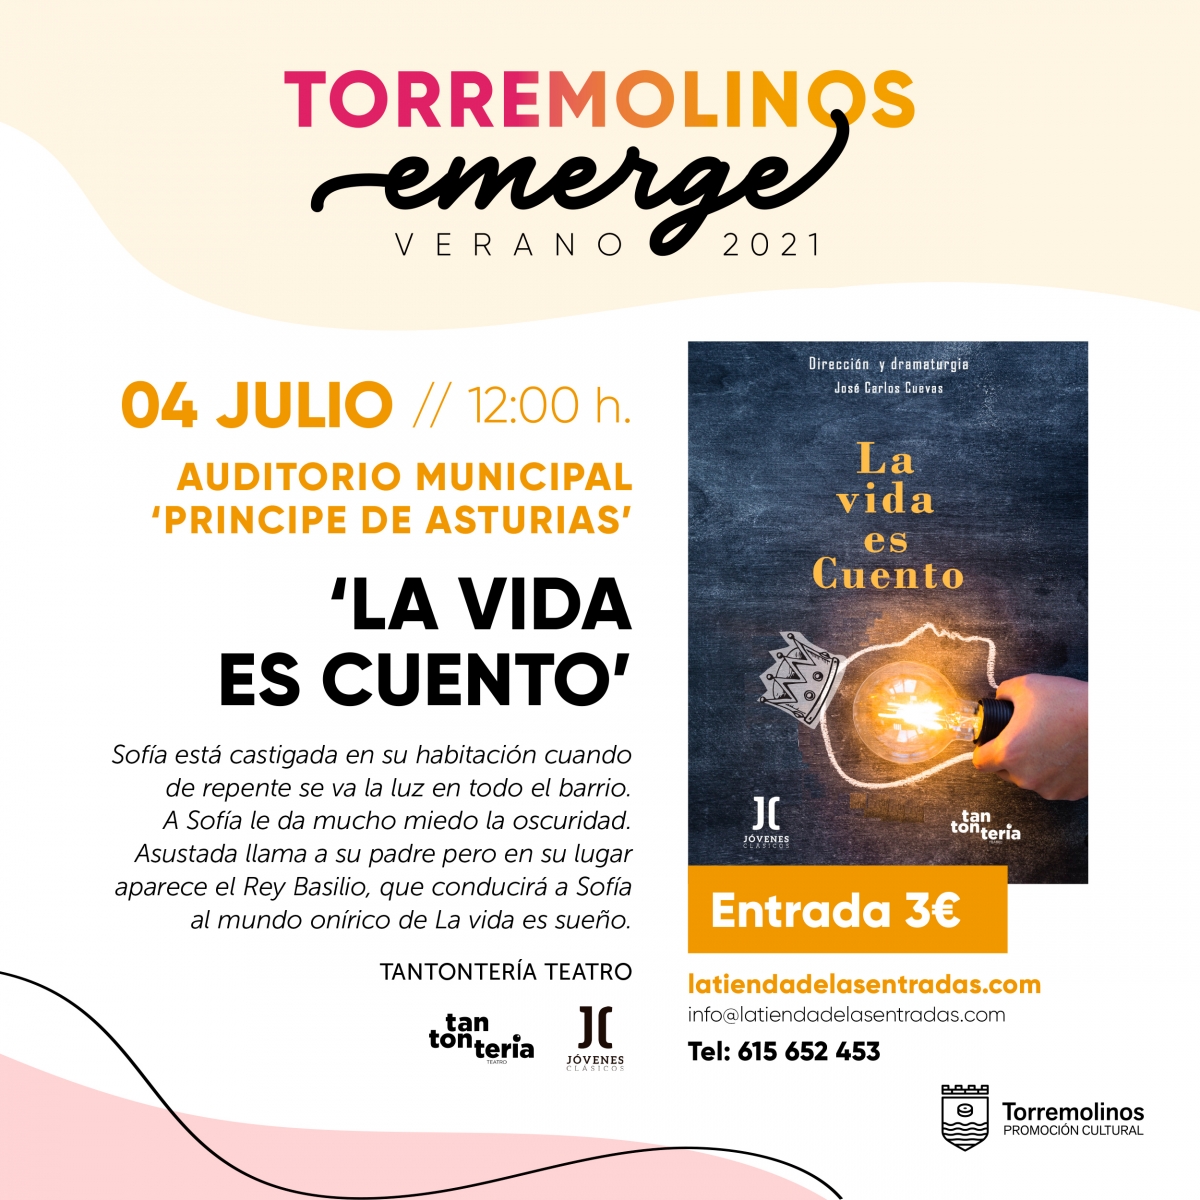 20210625181618_events_314_torremolinos-emerge-rrss-4-julio.jpg